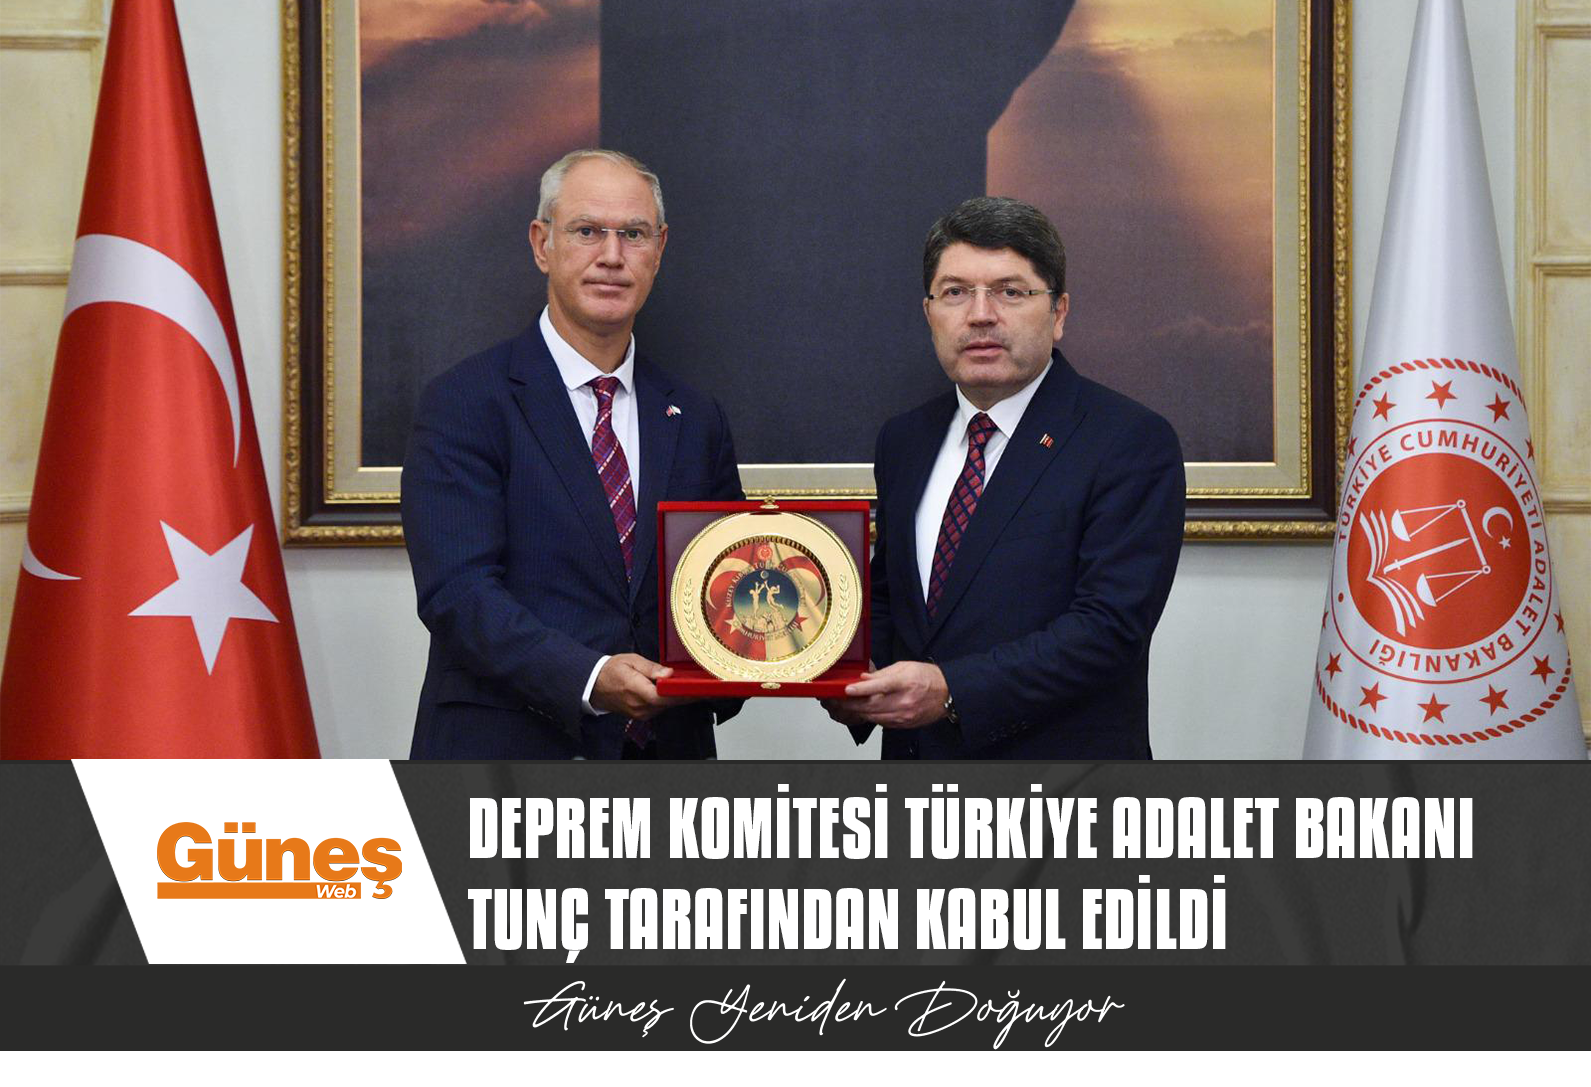 Deprem Komitesi Türkiye Adalet Bakanı Tunç tarafından kabul edildi